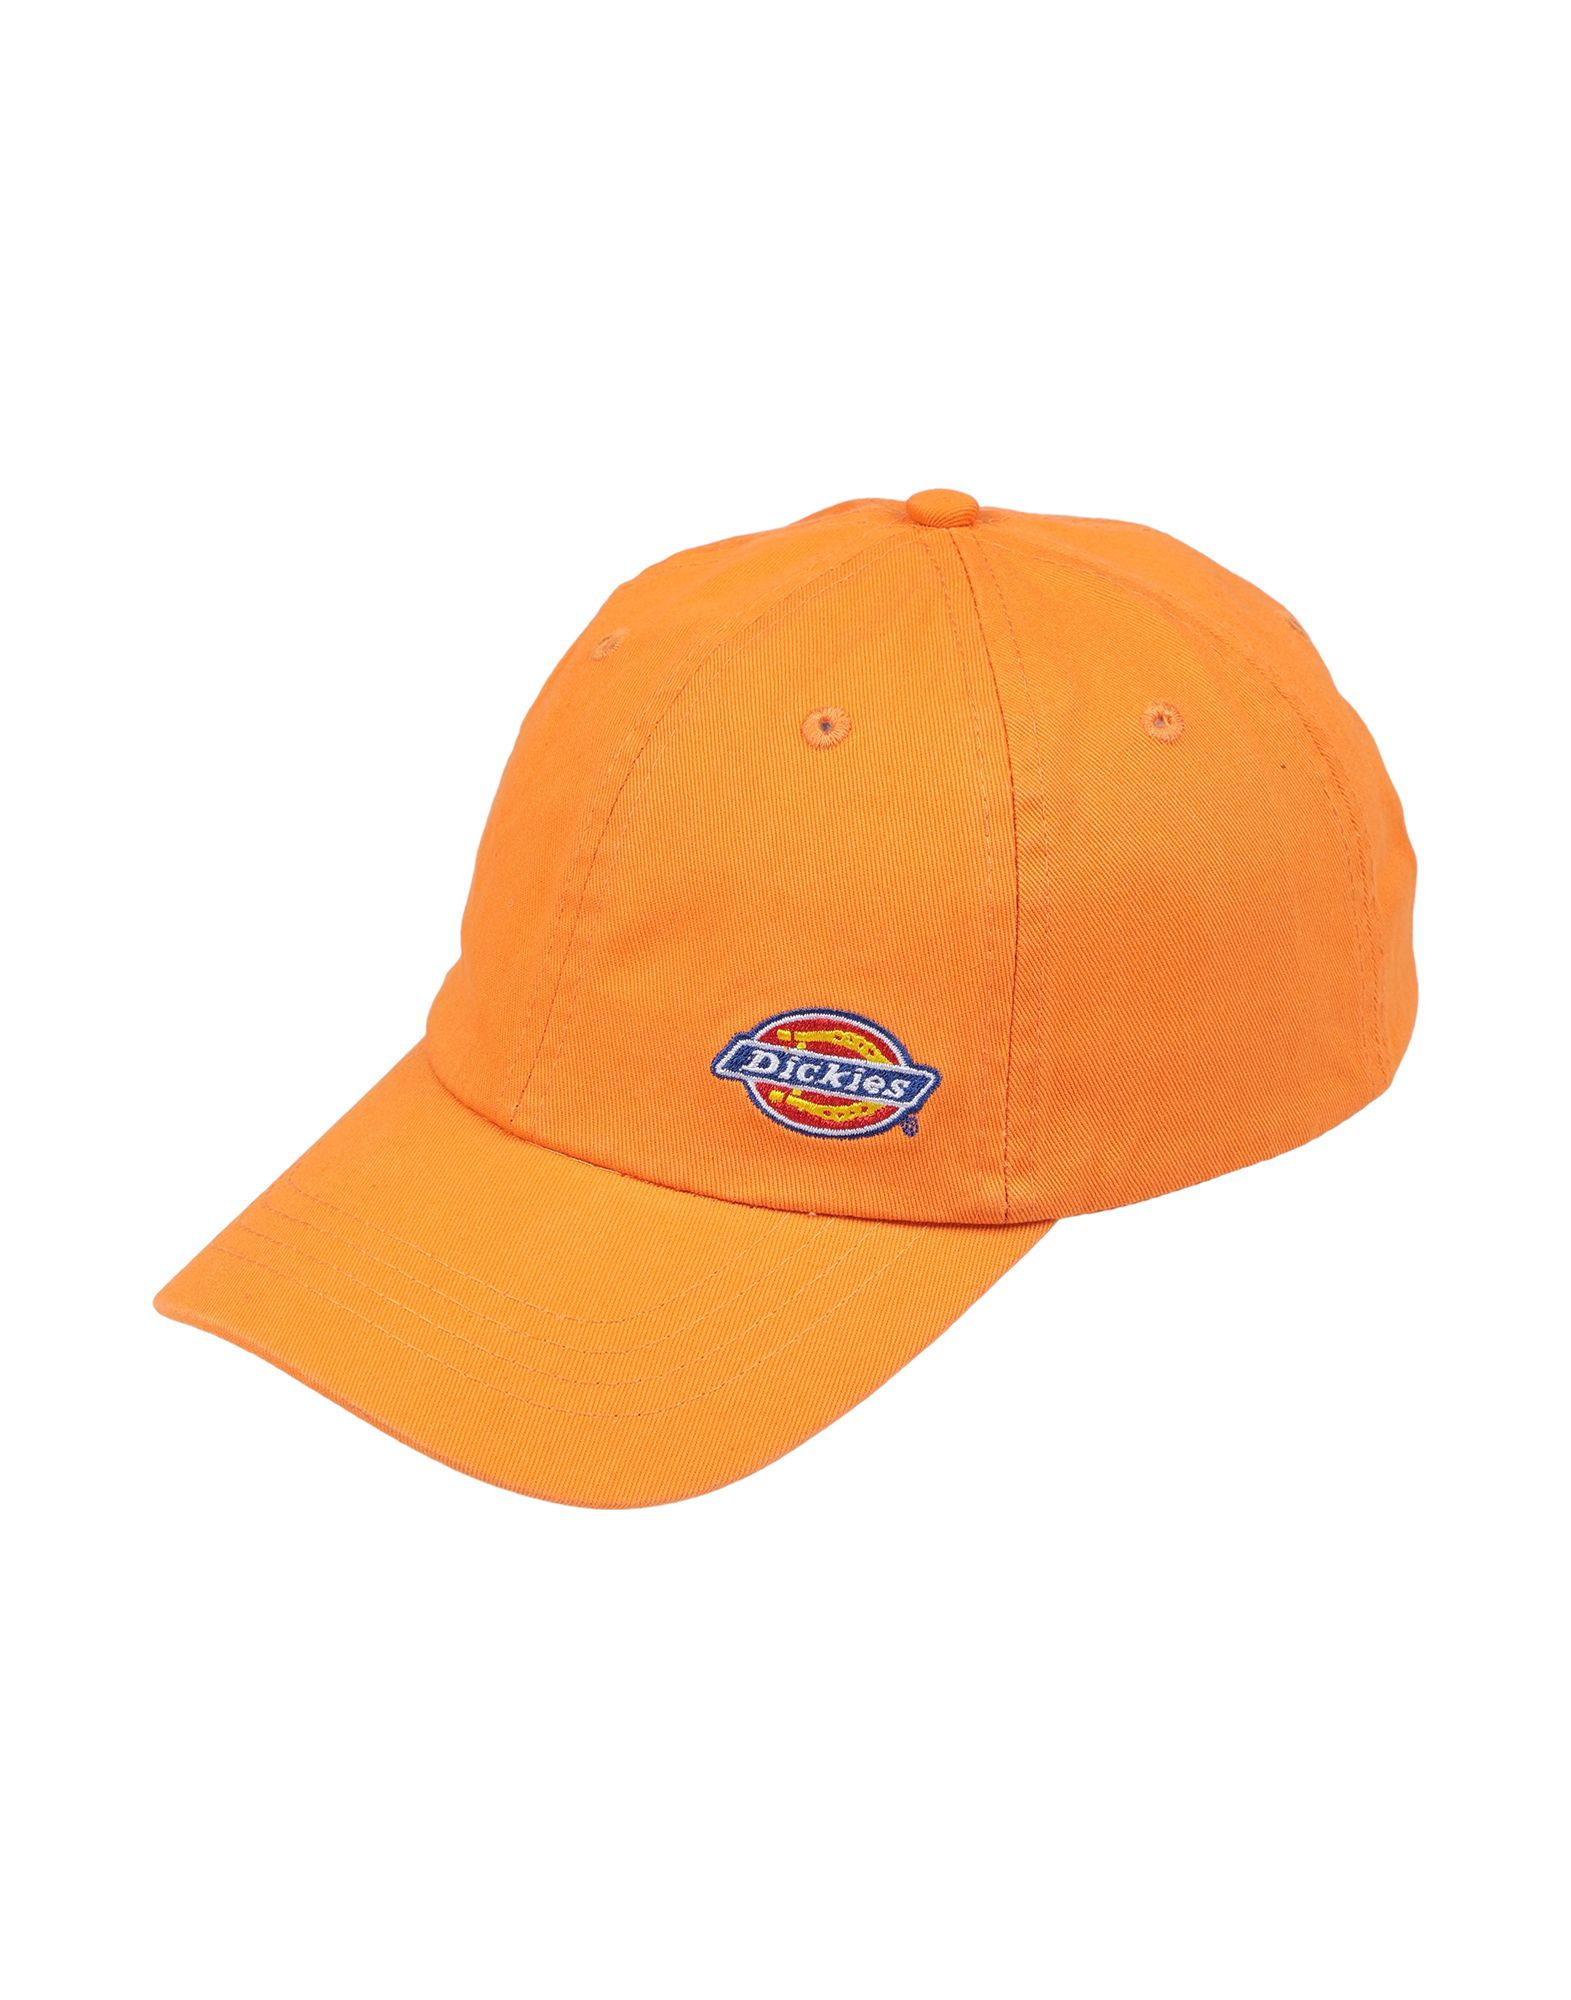 《送料無料》DICKIES メンズ 帽子 オレンジ one size コットン 100%